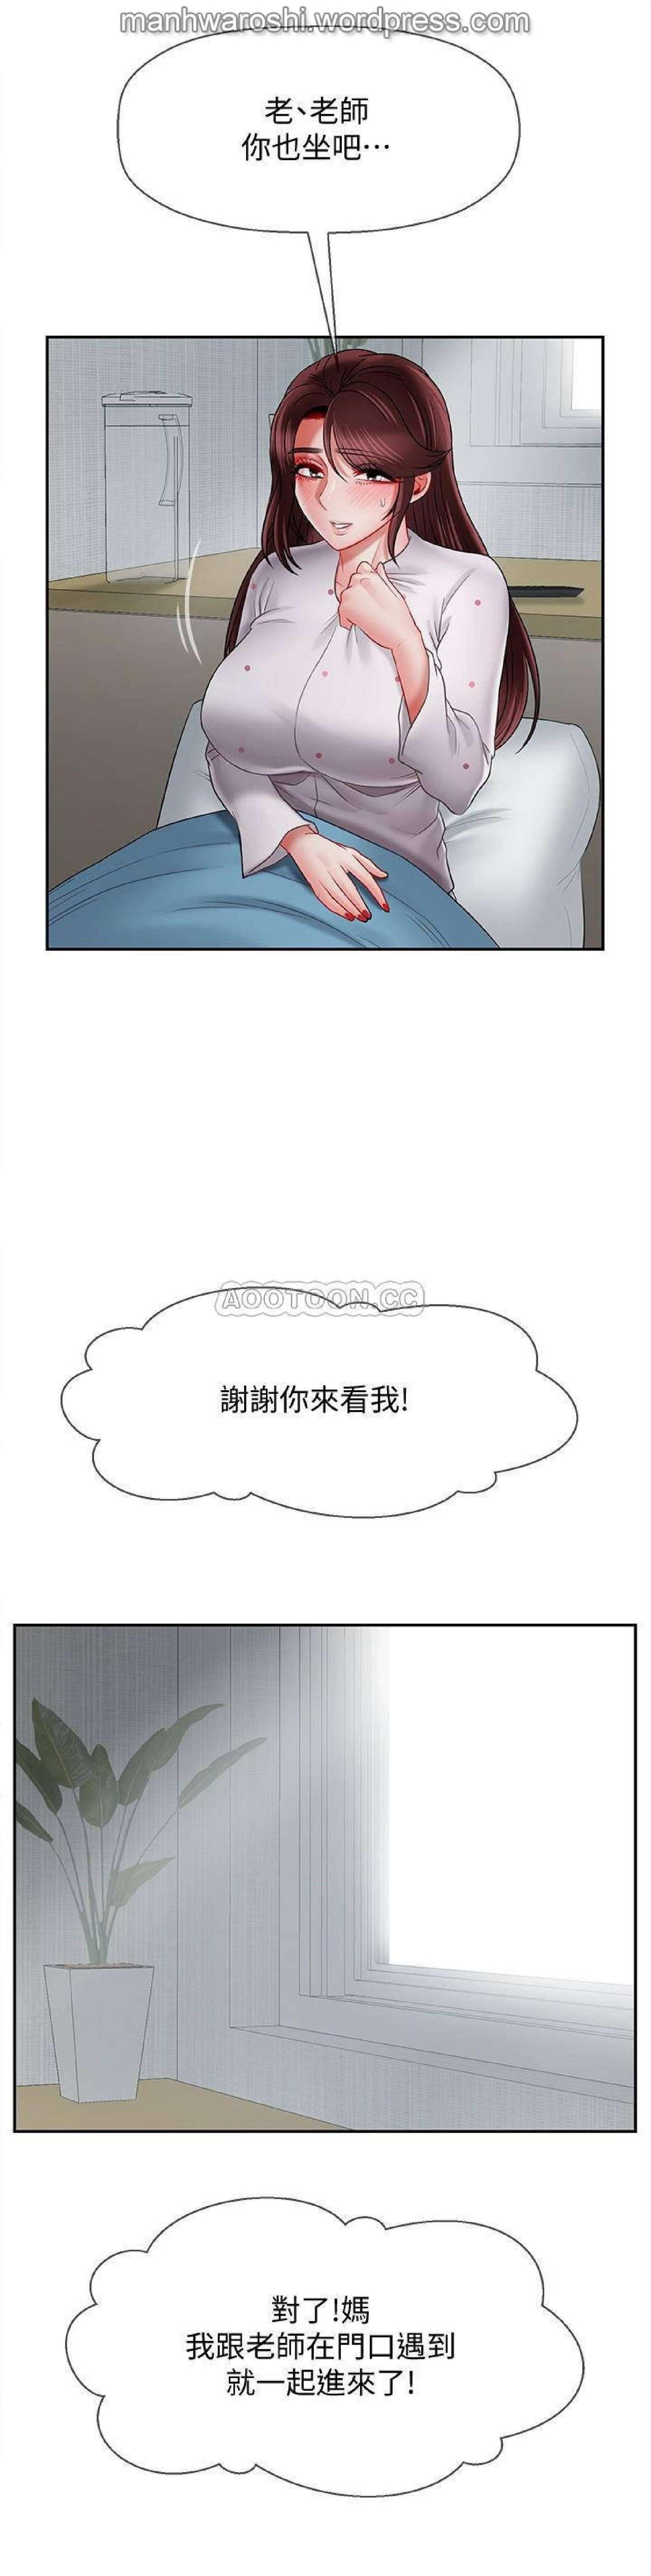 坏老师 | PHYSICAL CLASSROOM 16 [Chinese] Manhwa 10